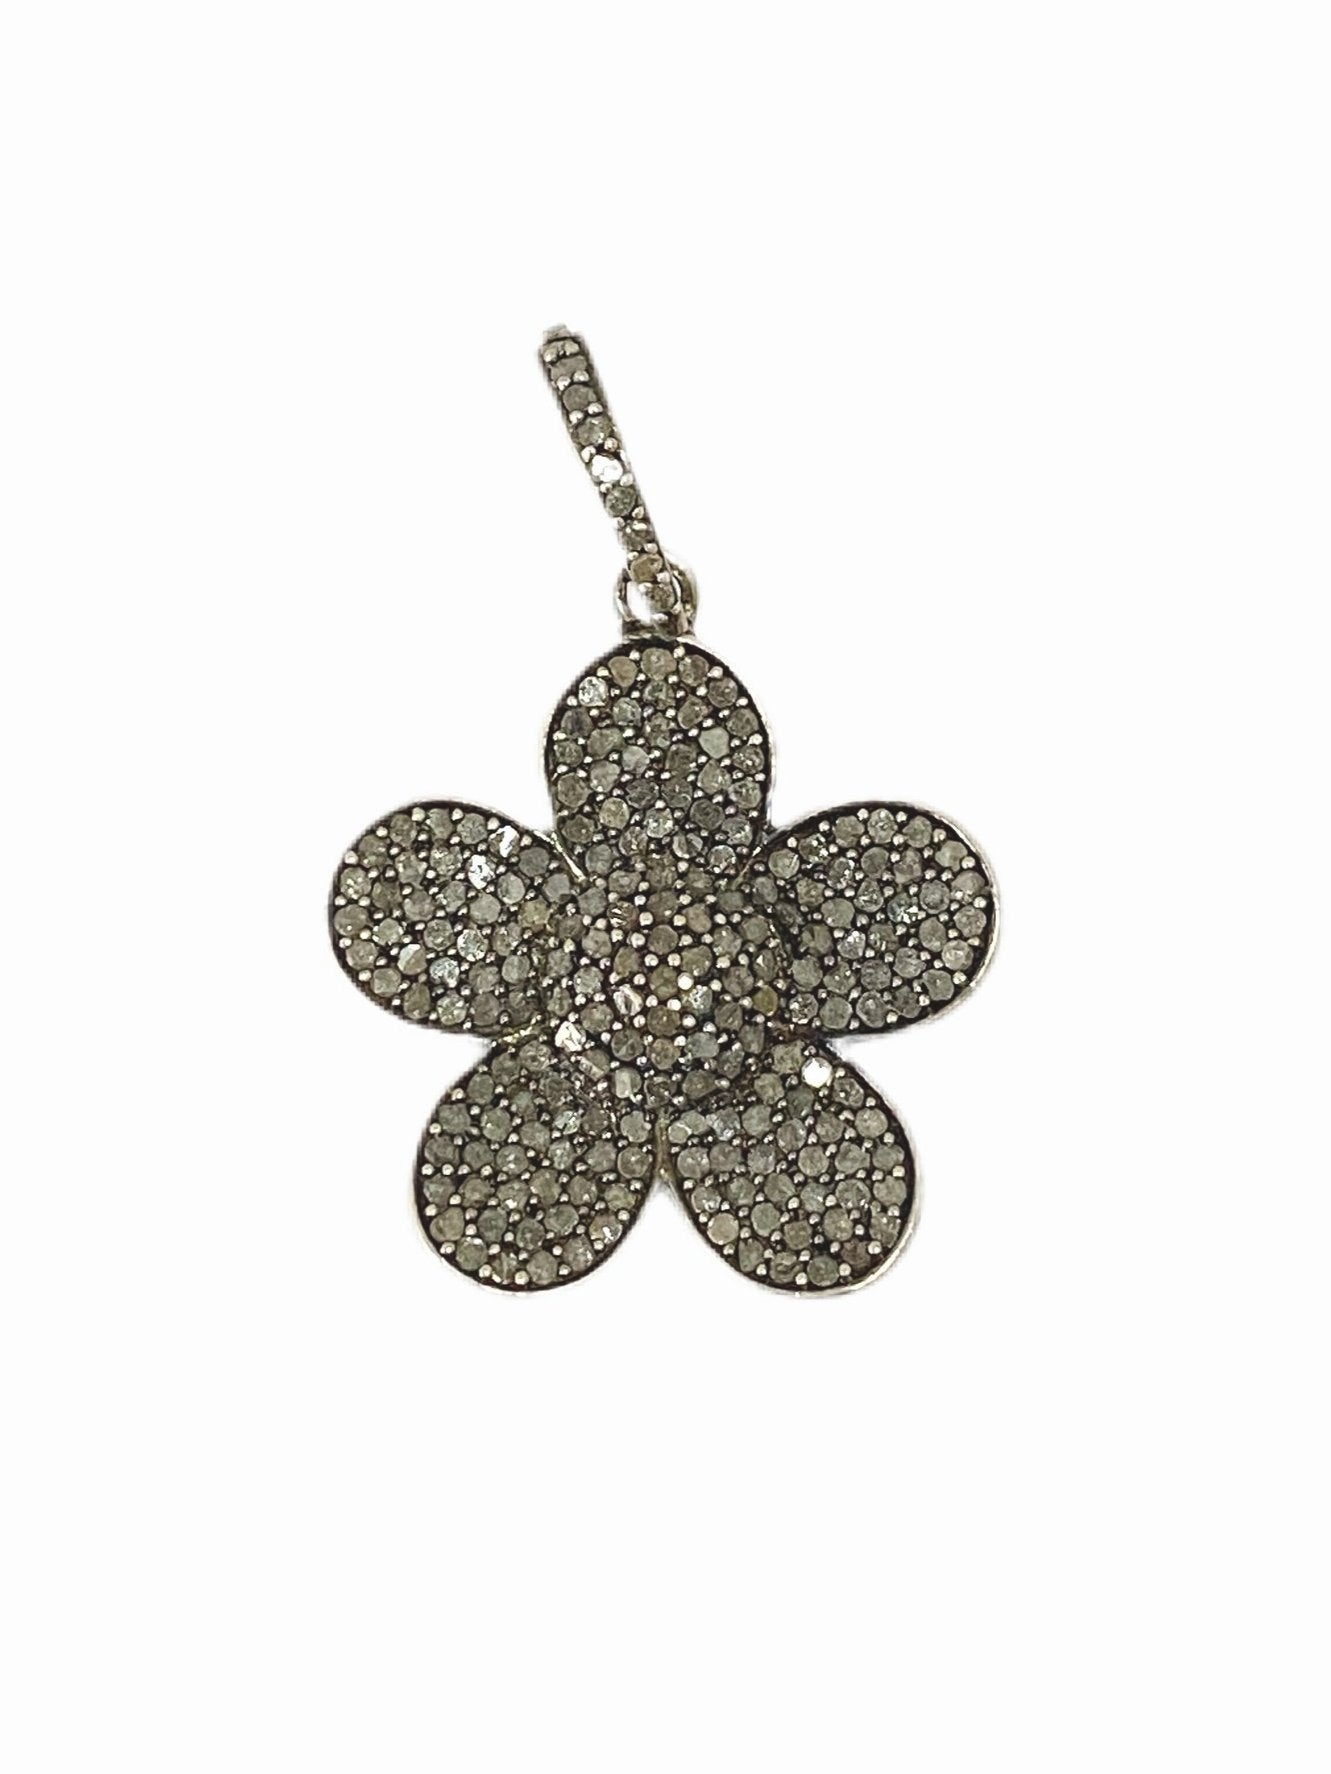 S.Row Designs Pave Diamond Flower pendant